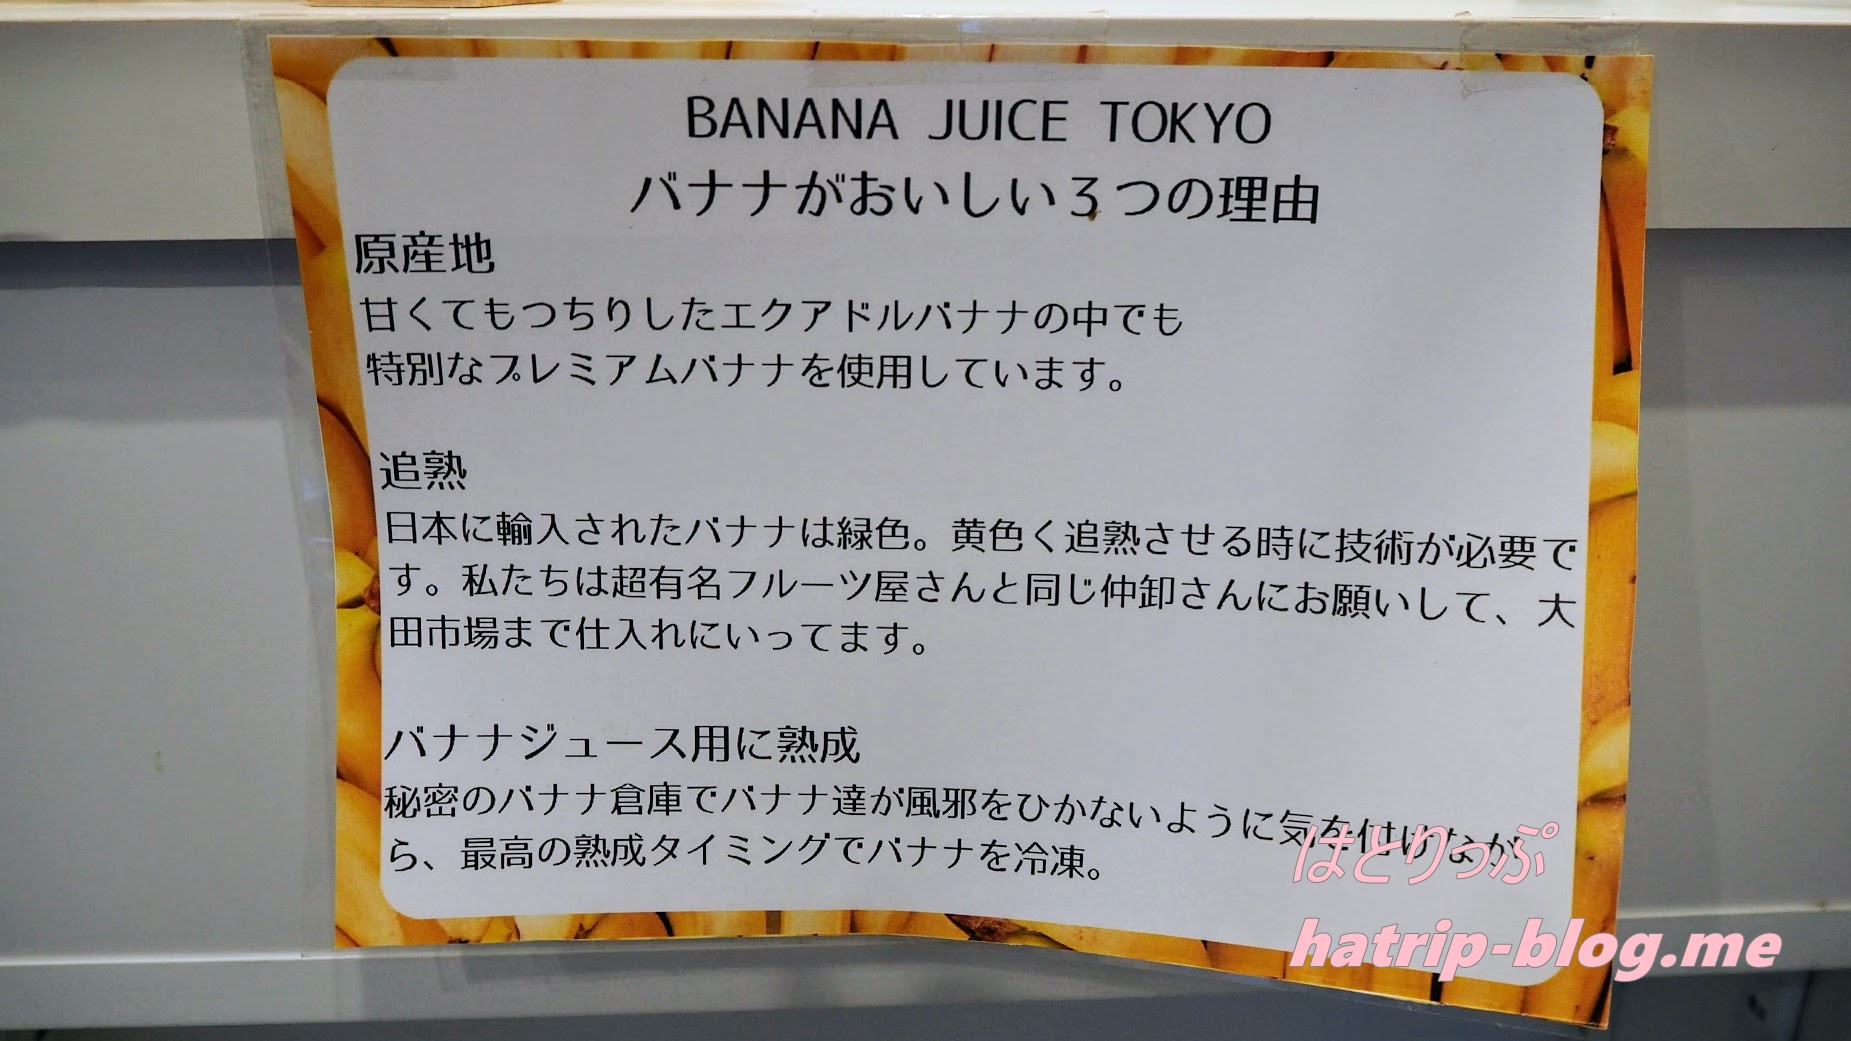 東京都中央区 日本橋 BANANA JUICE TOKYO バナナがおいしい3つの理由